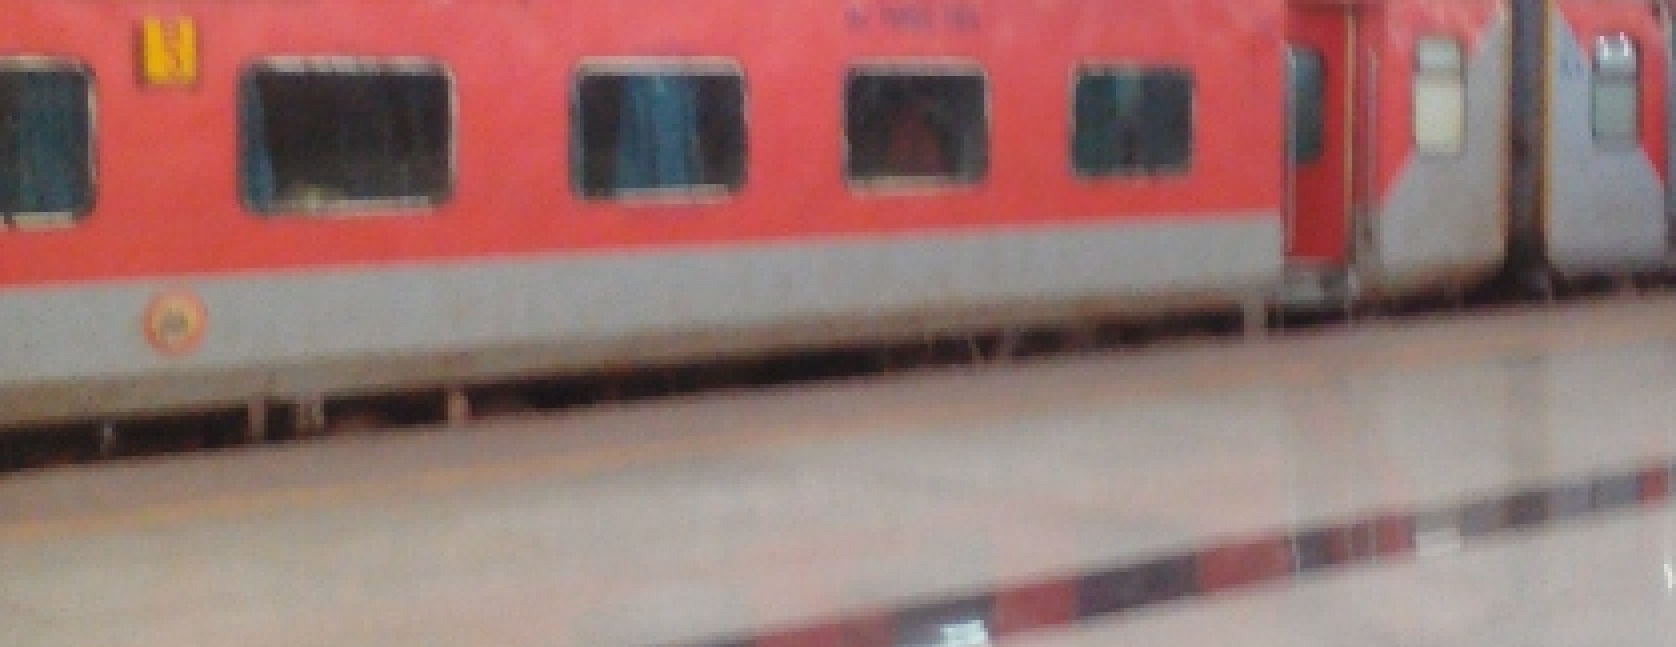 Train Transport in Kerala